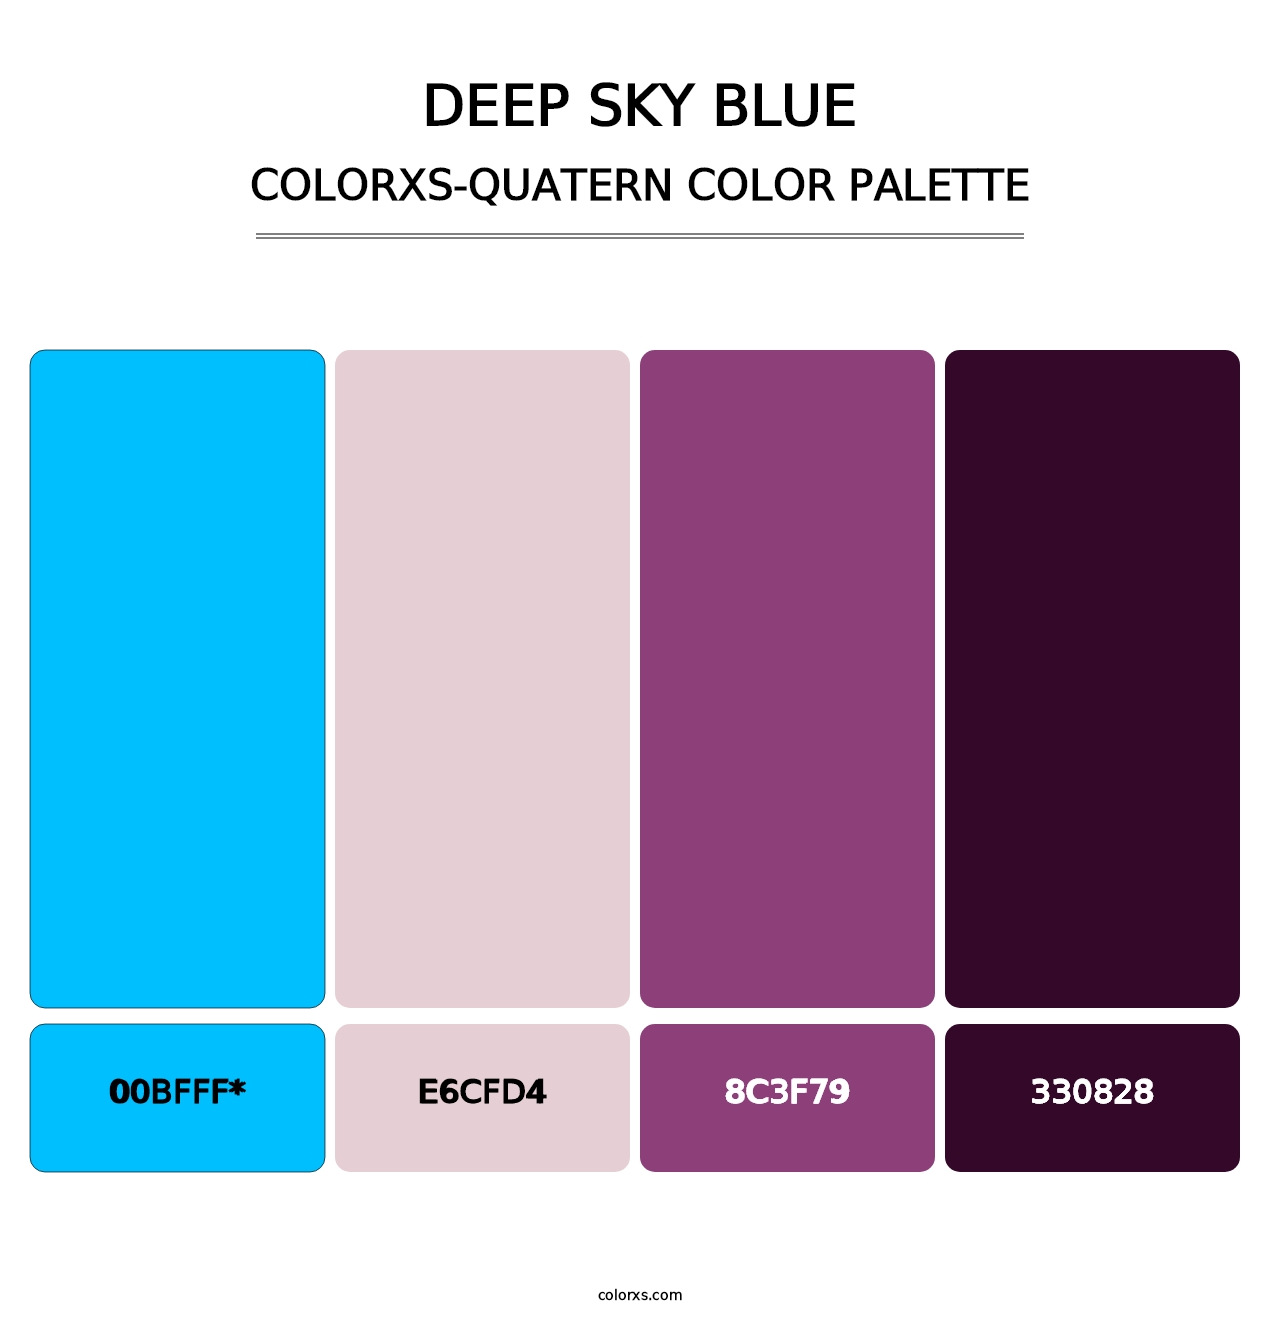 Deep Sky Blue - Colorxs Quatern Palette